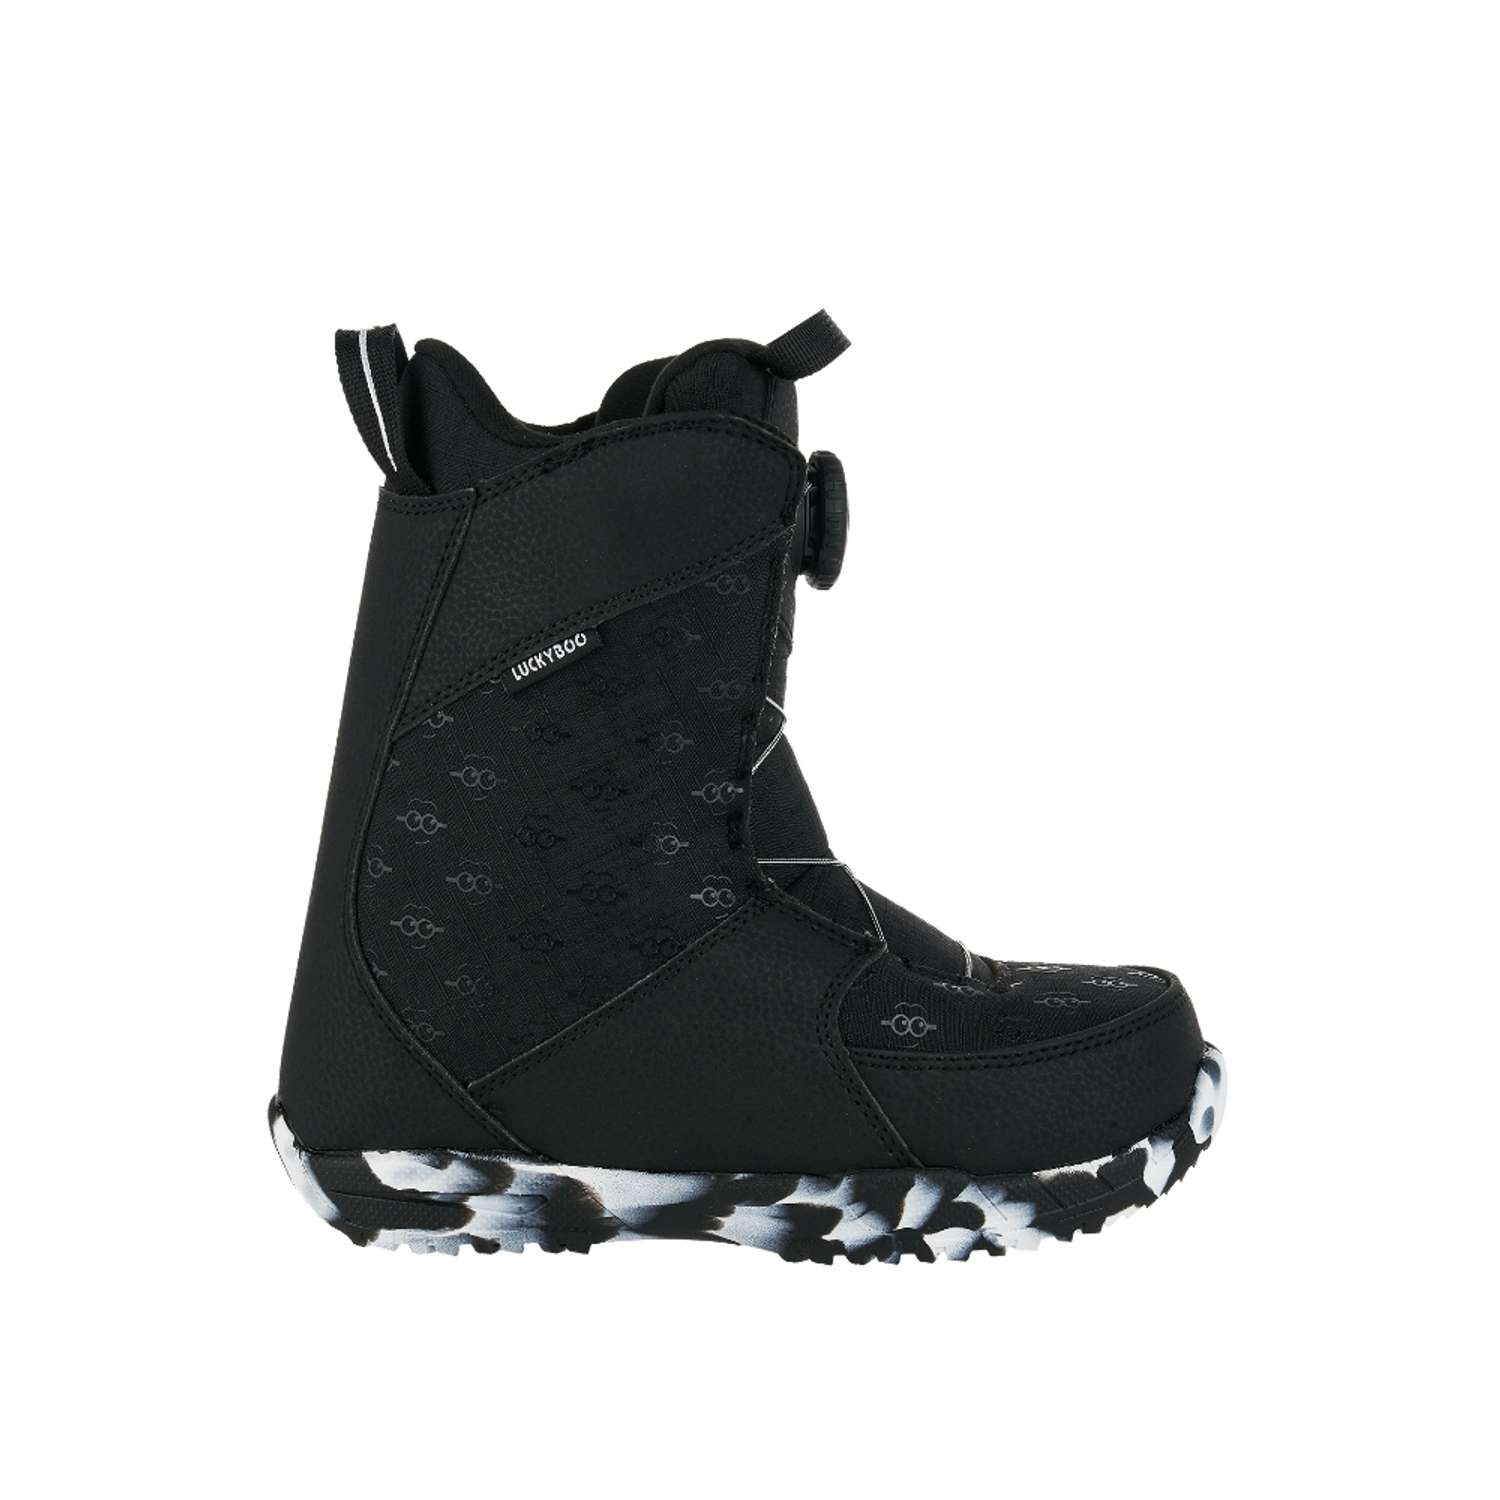 Ботинки для сноуборда Fastec Luckyboo 21cm - фото 2